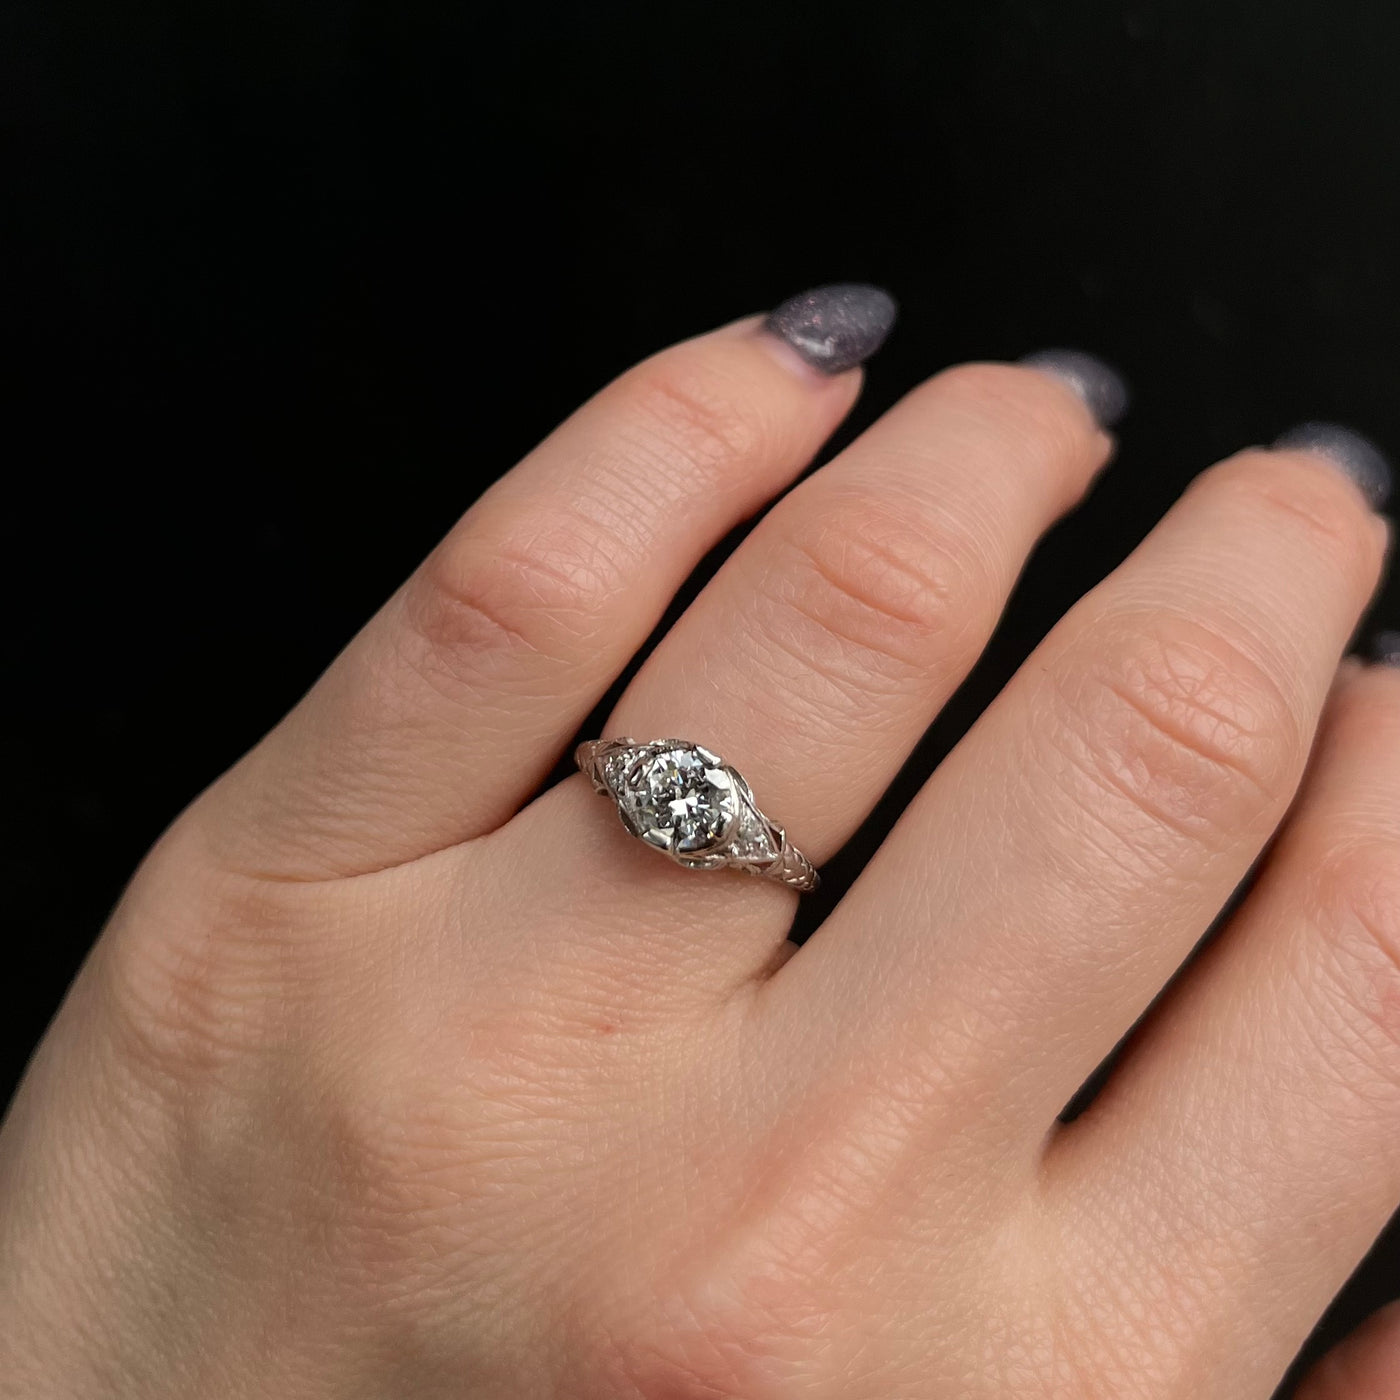 Art Deco Restoration GIA 0.62 Carat Round Brilliant Cut Diamond Engagement Ring